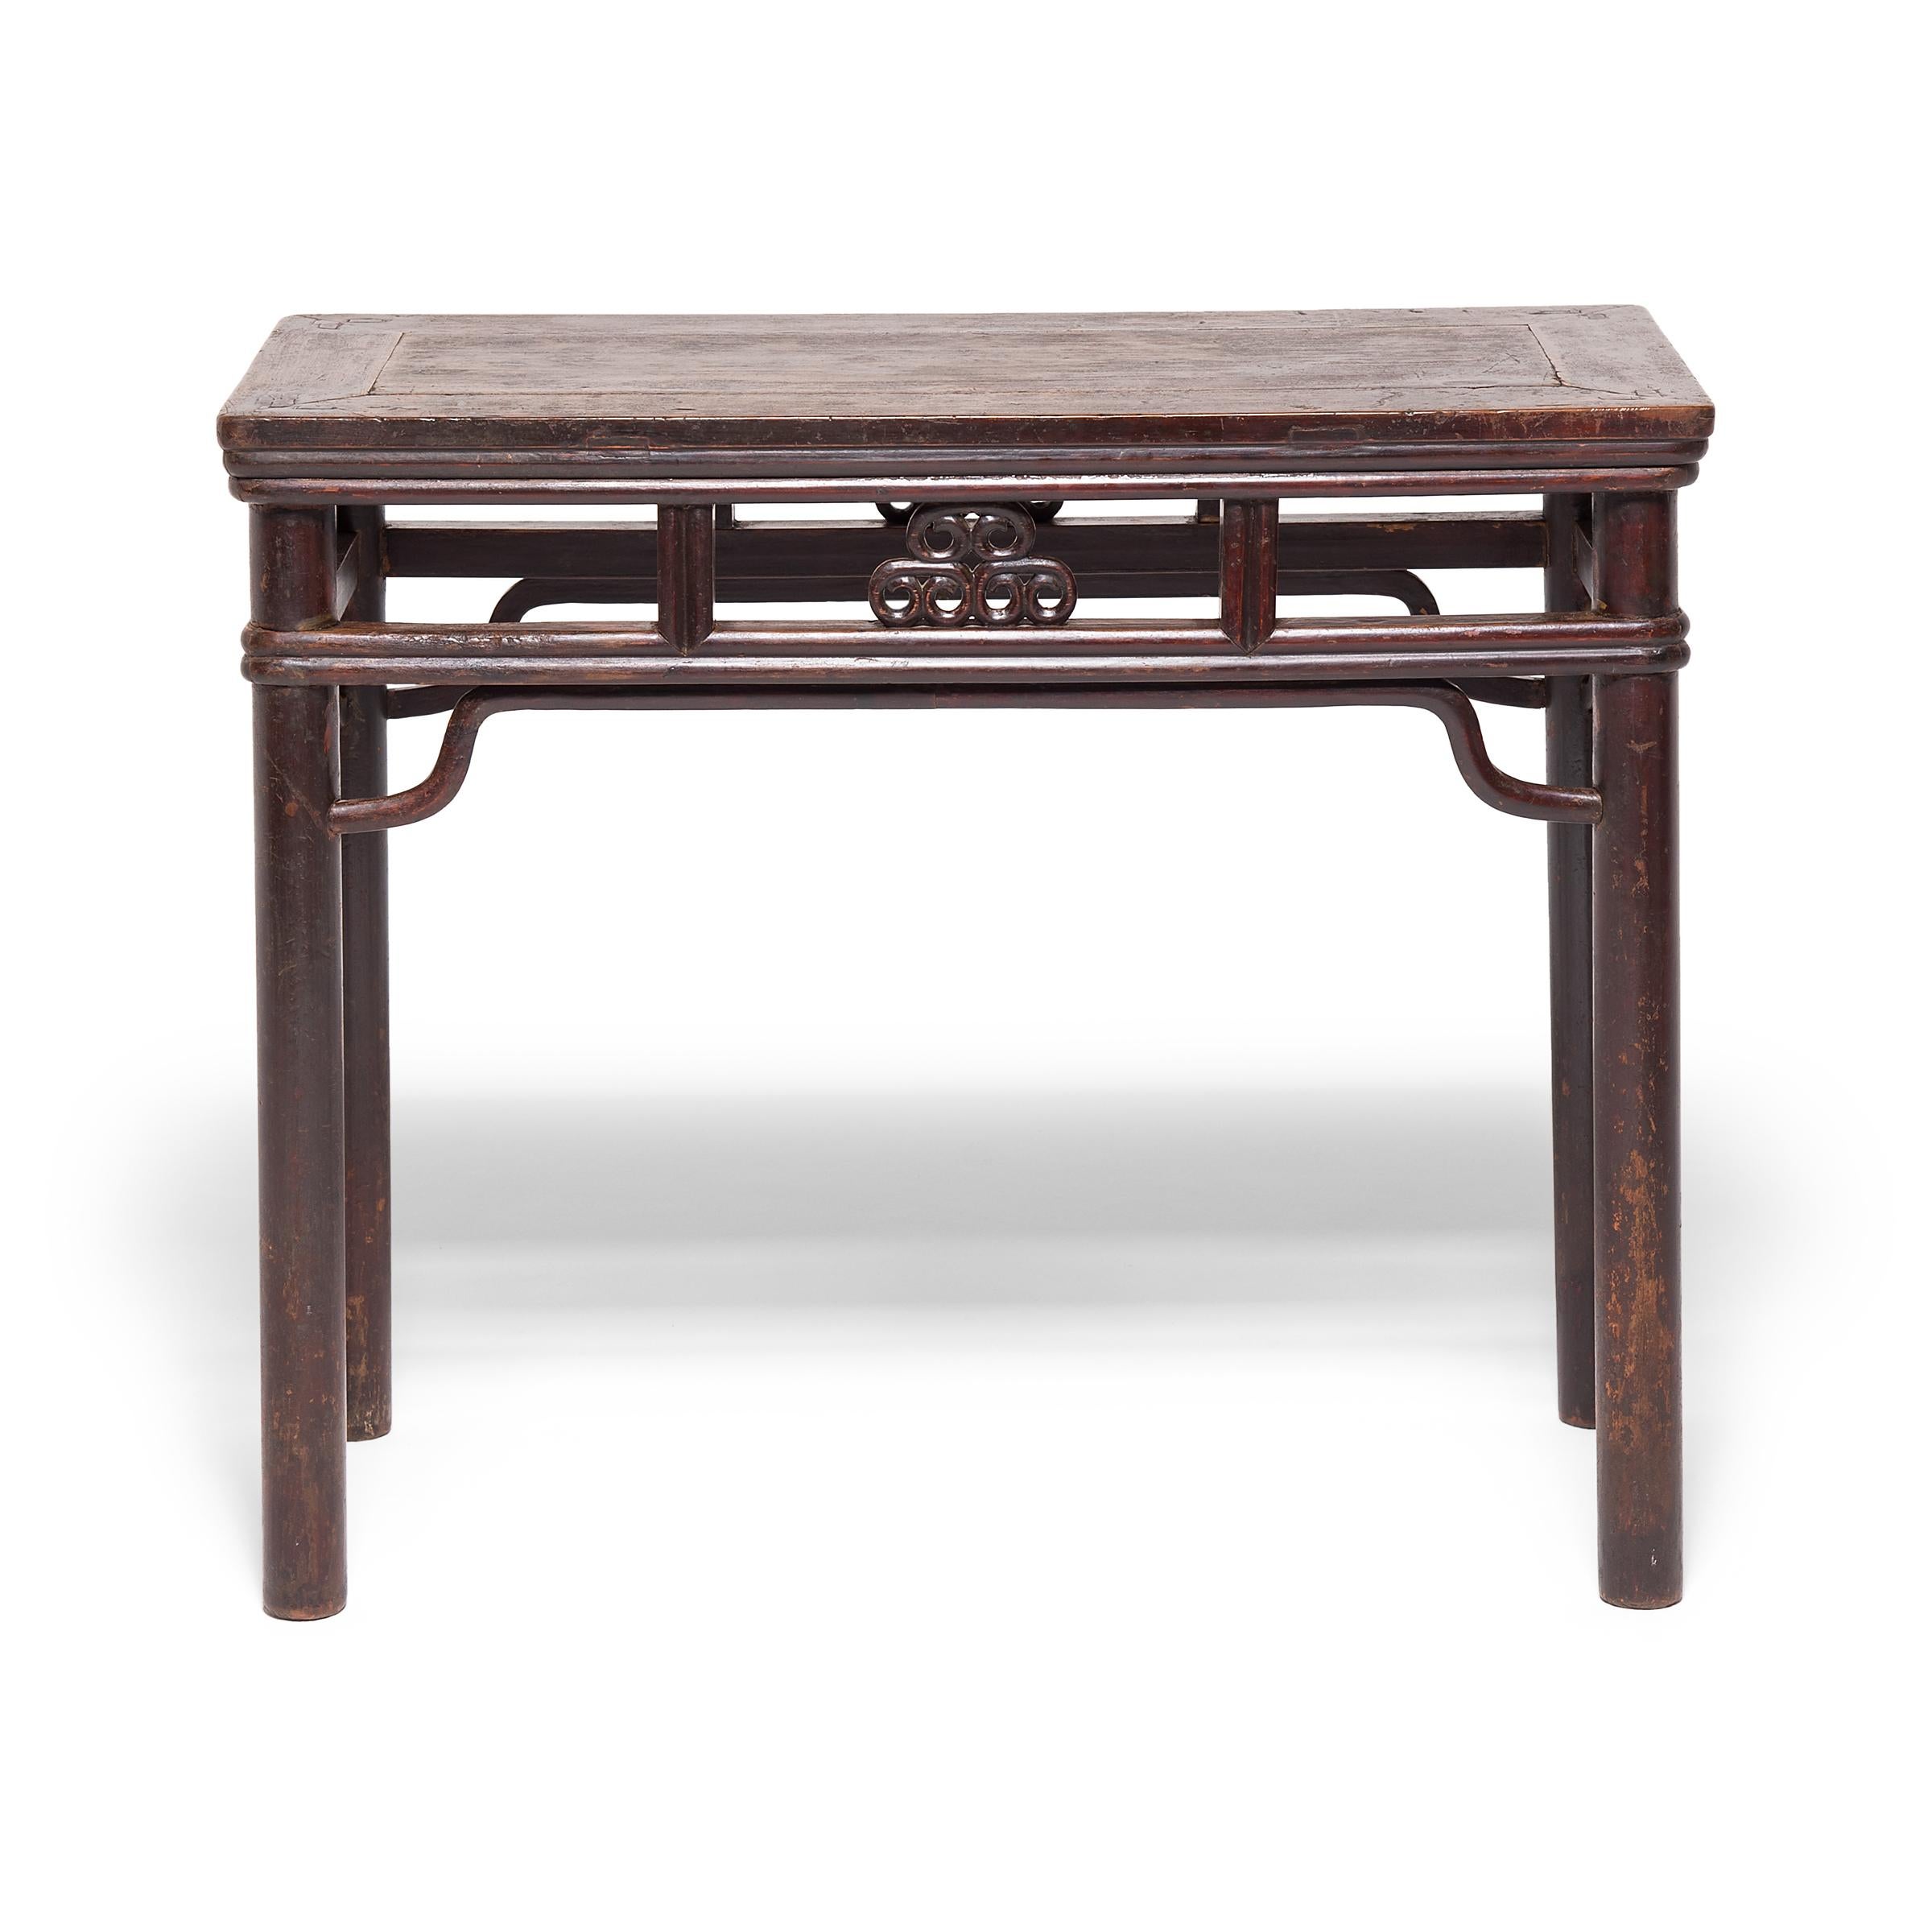 Dieser exquisite Weintisch aus dem 19. Jahrhundert wurde aus Walnussholz gefertigt, das aus den Wäldern der chinesischen Provinz Hebei stammt. Der Tisch besticht durch runde Beine, sanft geschwungene Bänder und eine zarte Schürze, die mit